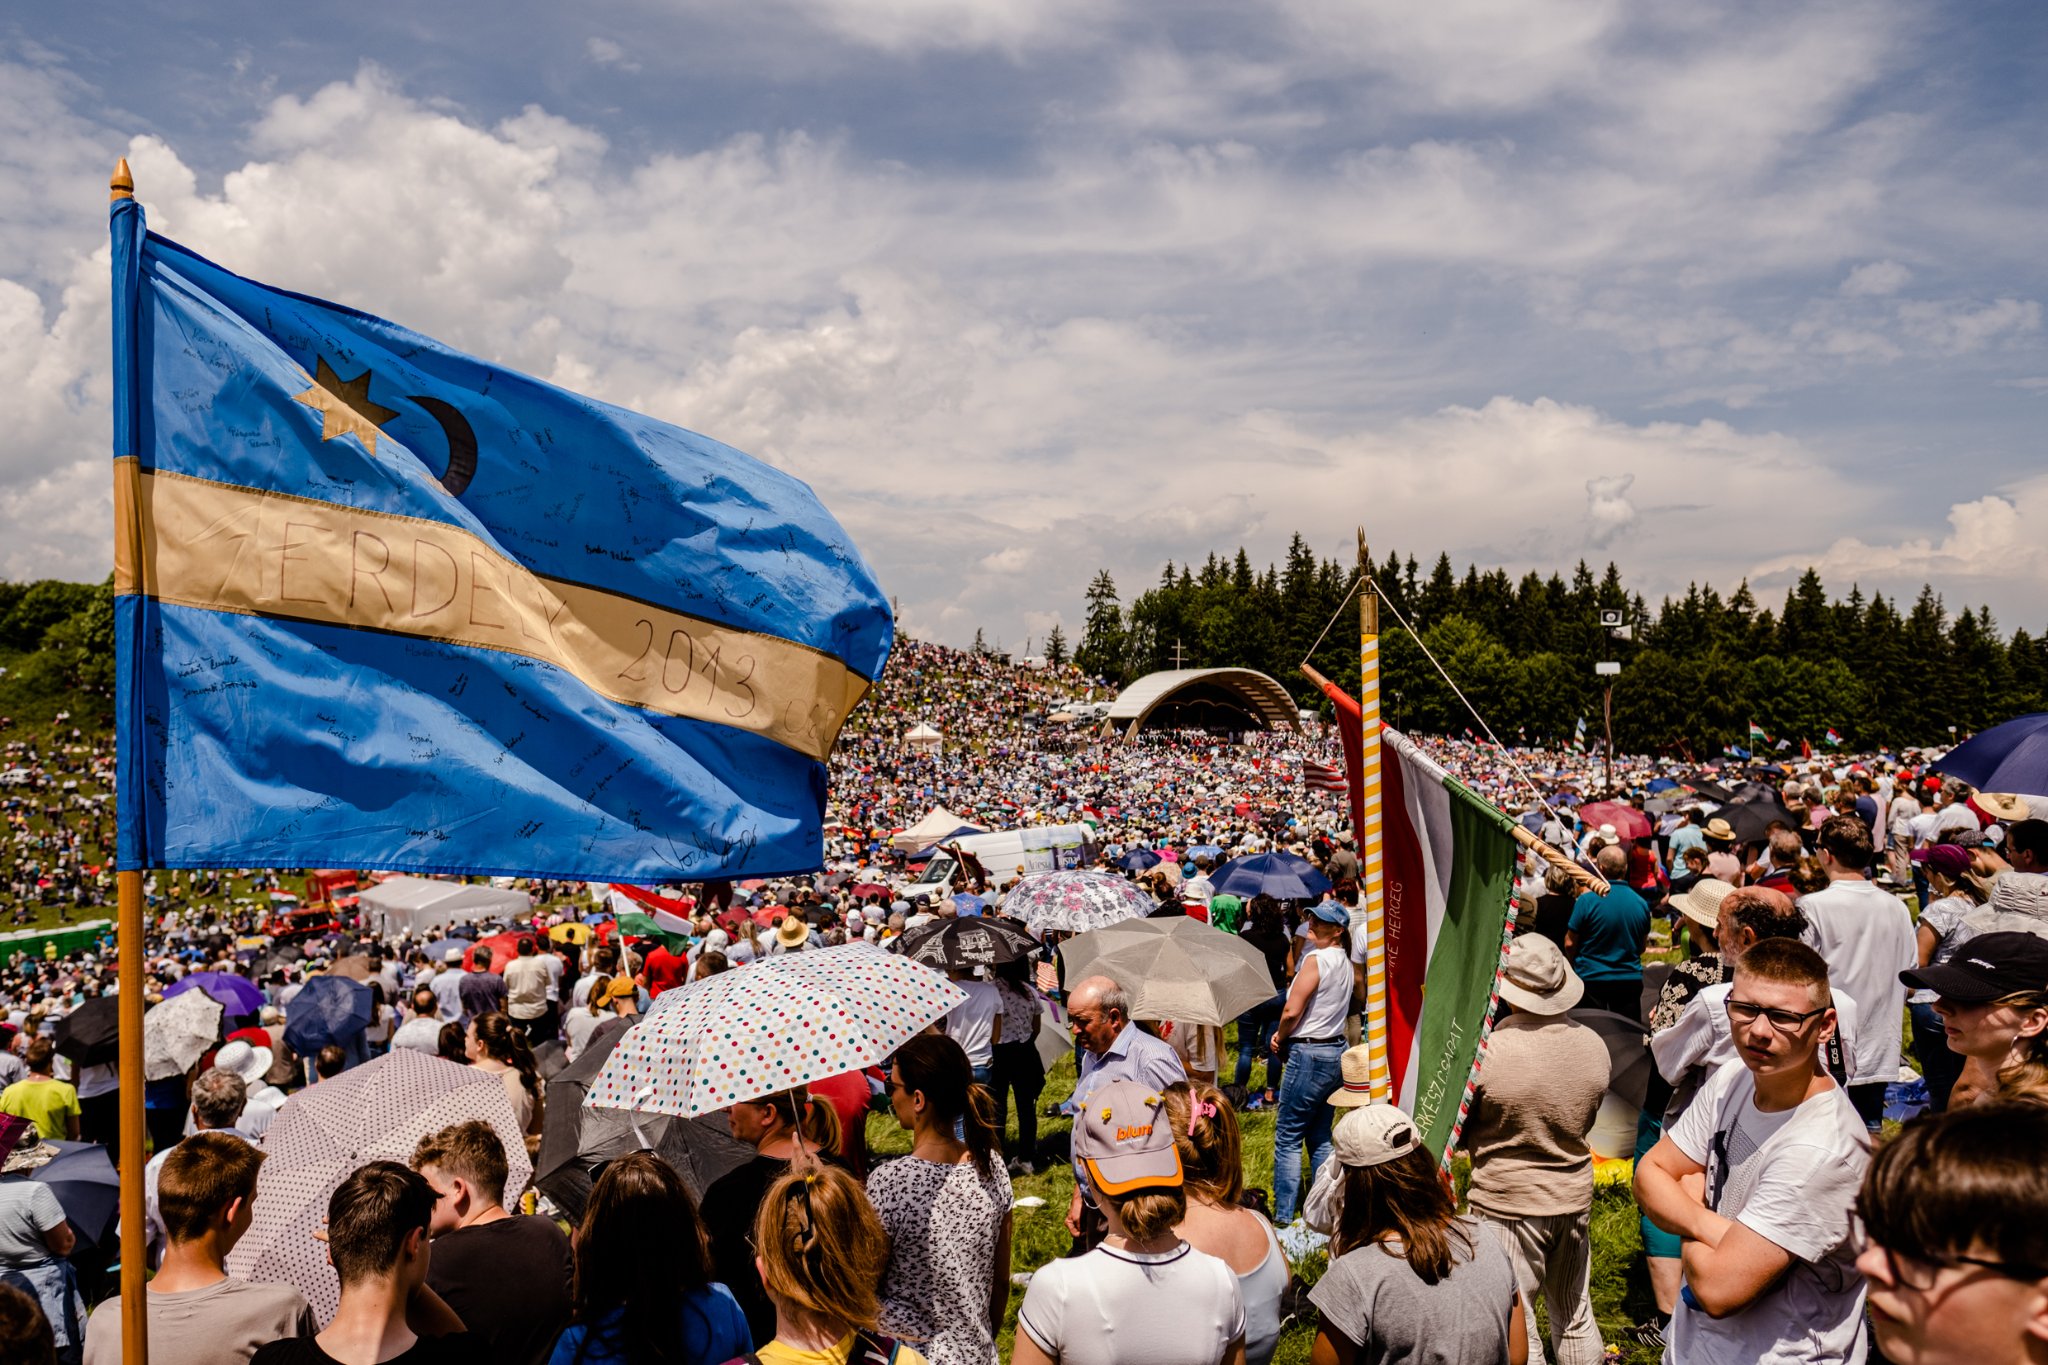 Hundreds of Thousands Celebrate Pentecost in Csíksomlyó